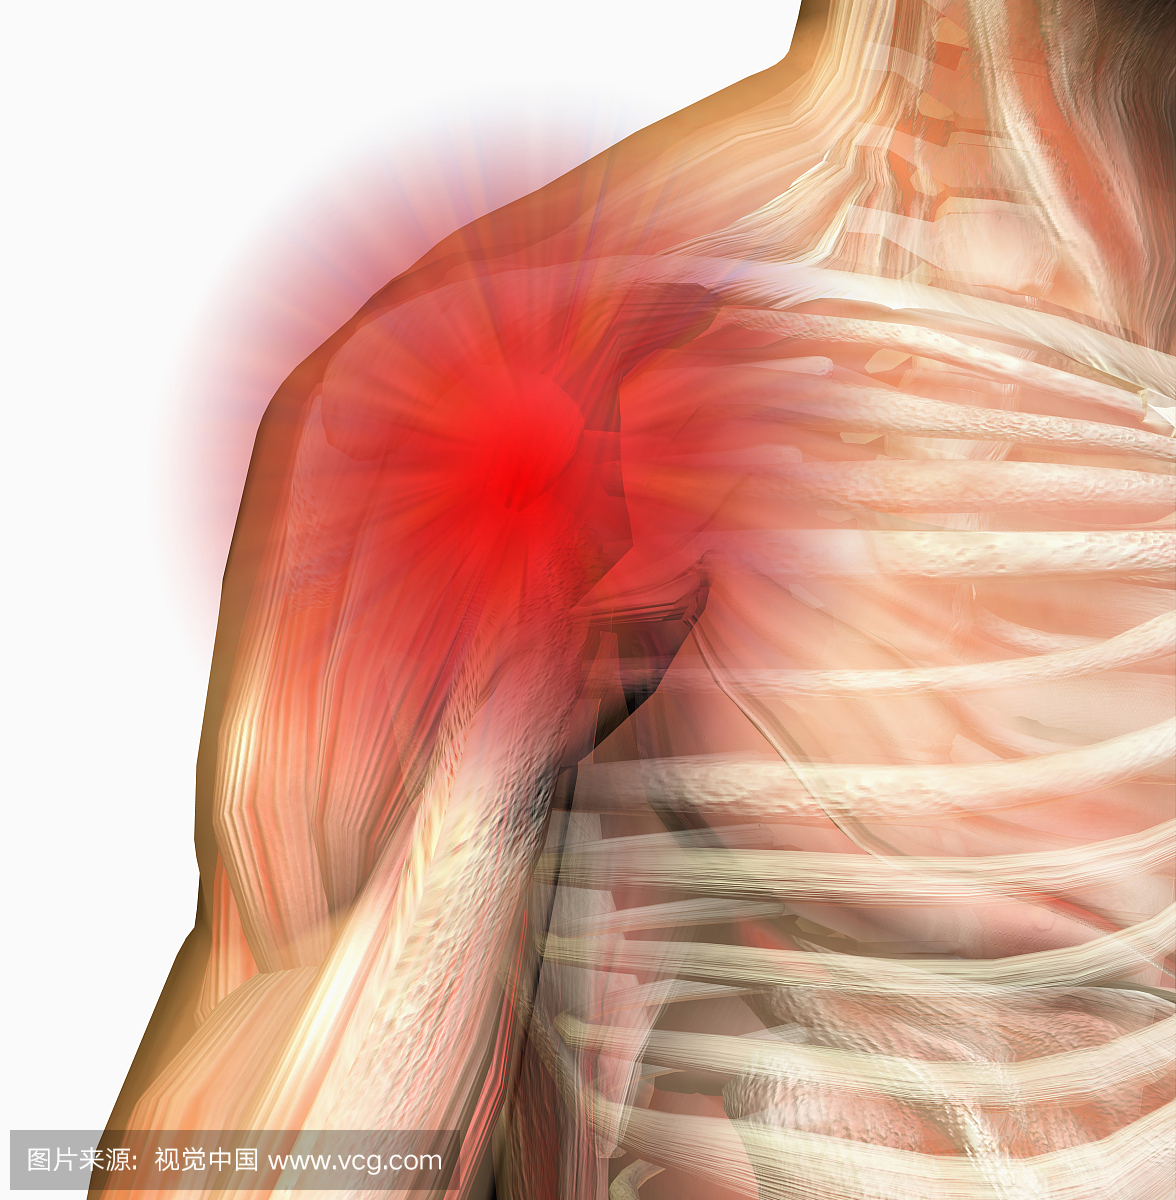 肩部疼痛。人类男性肩膀球窝关节,显示骨骼和